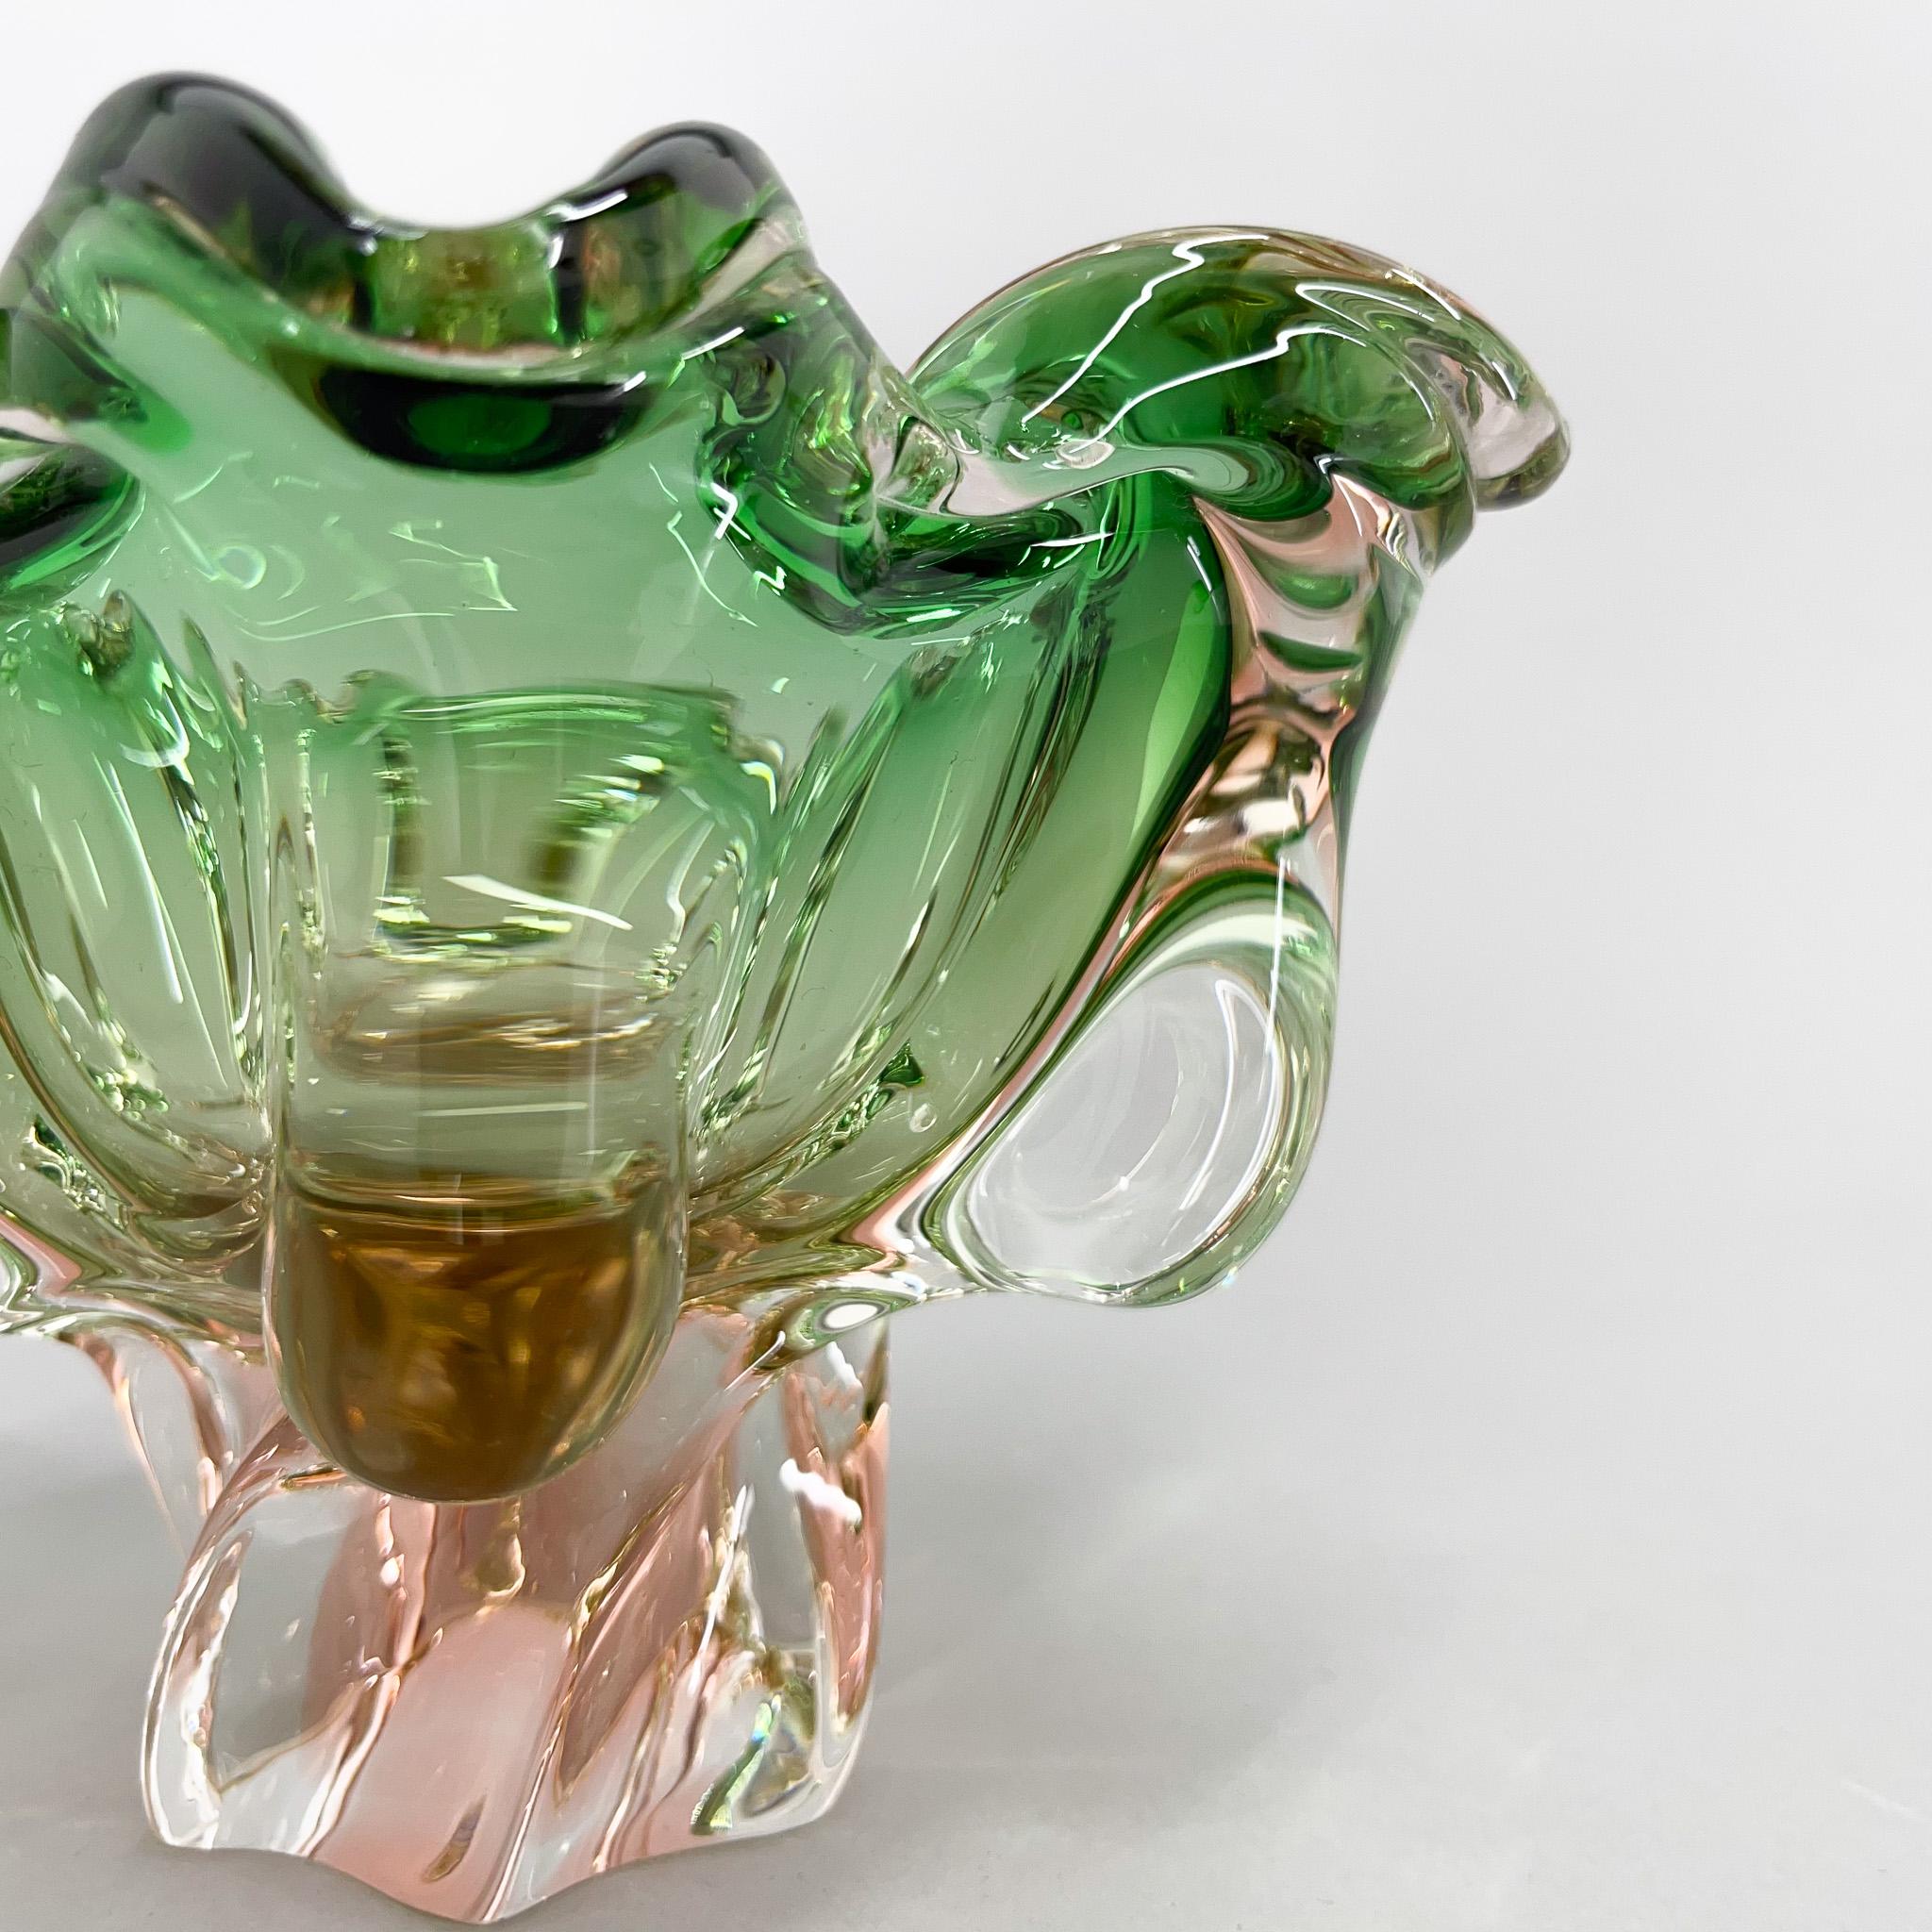 20th Century 1960s Art Glass Bowl by Josef Hospodka for Chribska Glassworks, Czechoslovakia